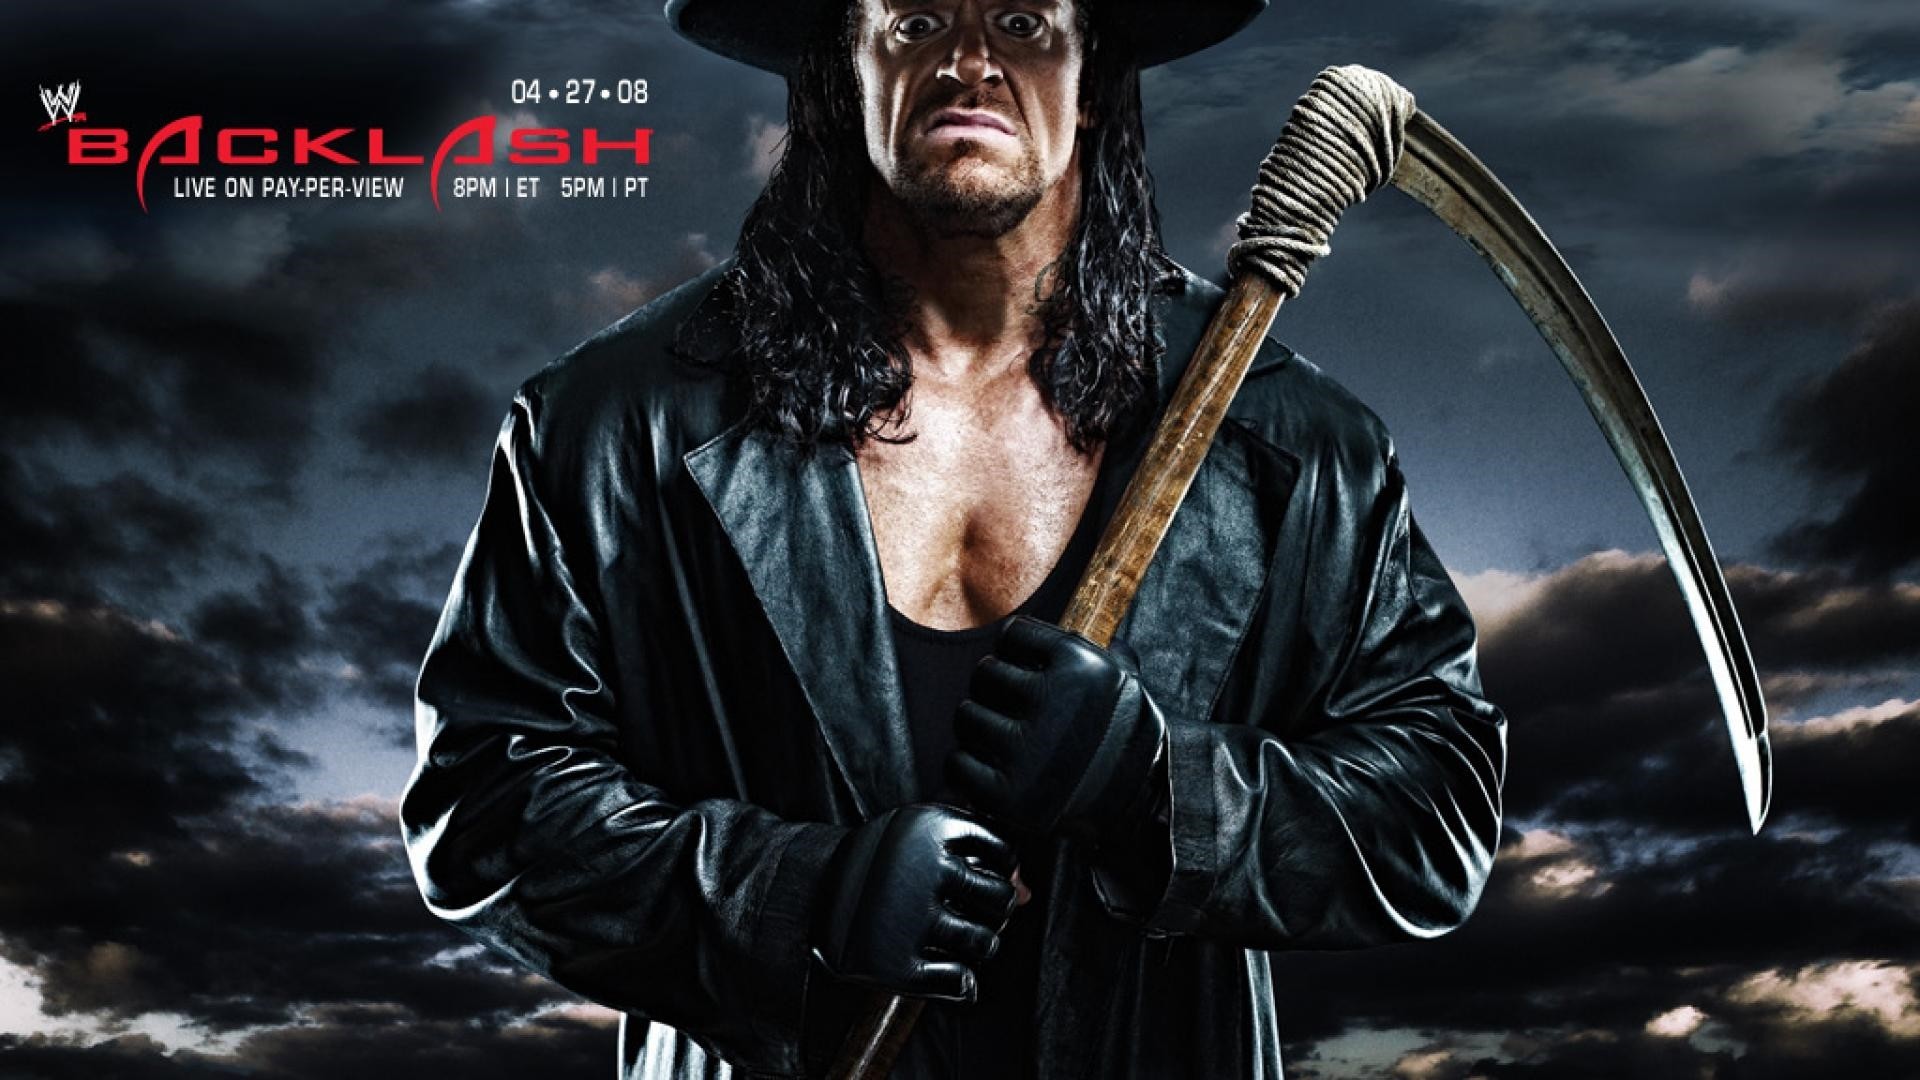 1920x1080 Wallpaper Undertaker 'The Dead man' | WWE ...